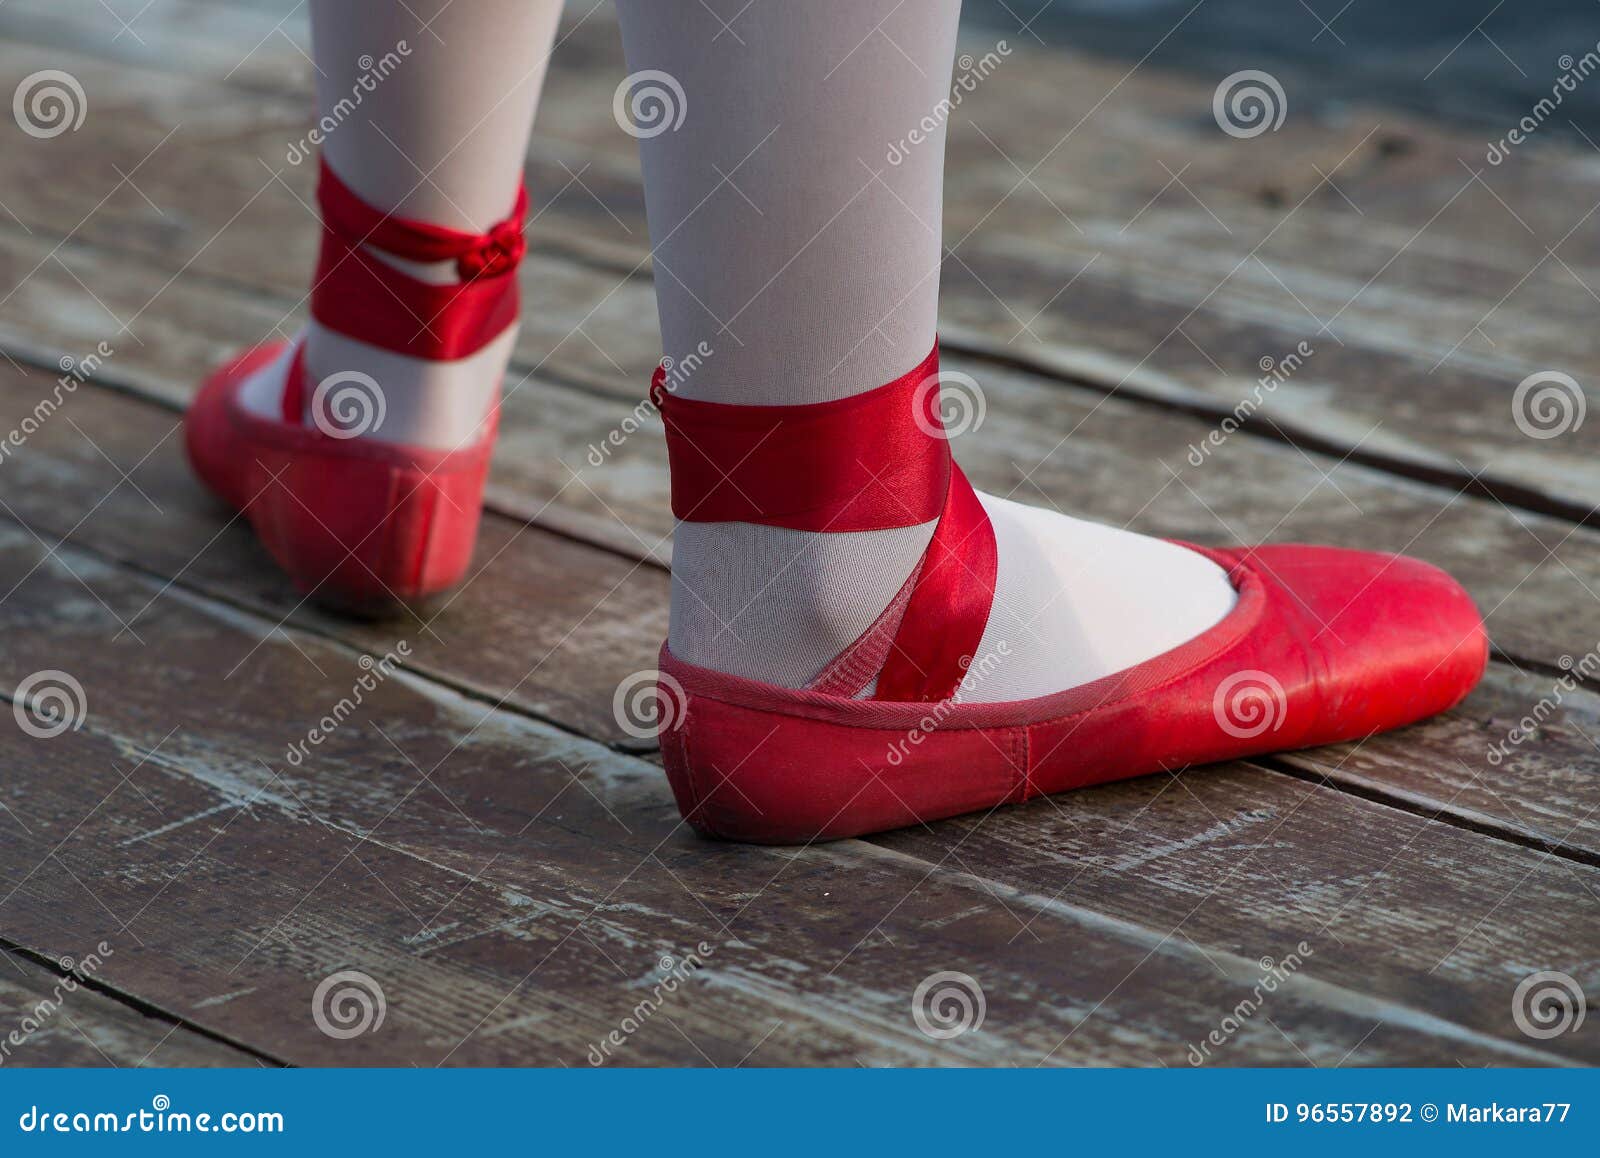 socks for ballerina shoes